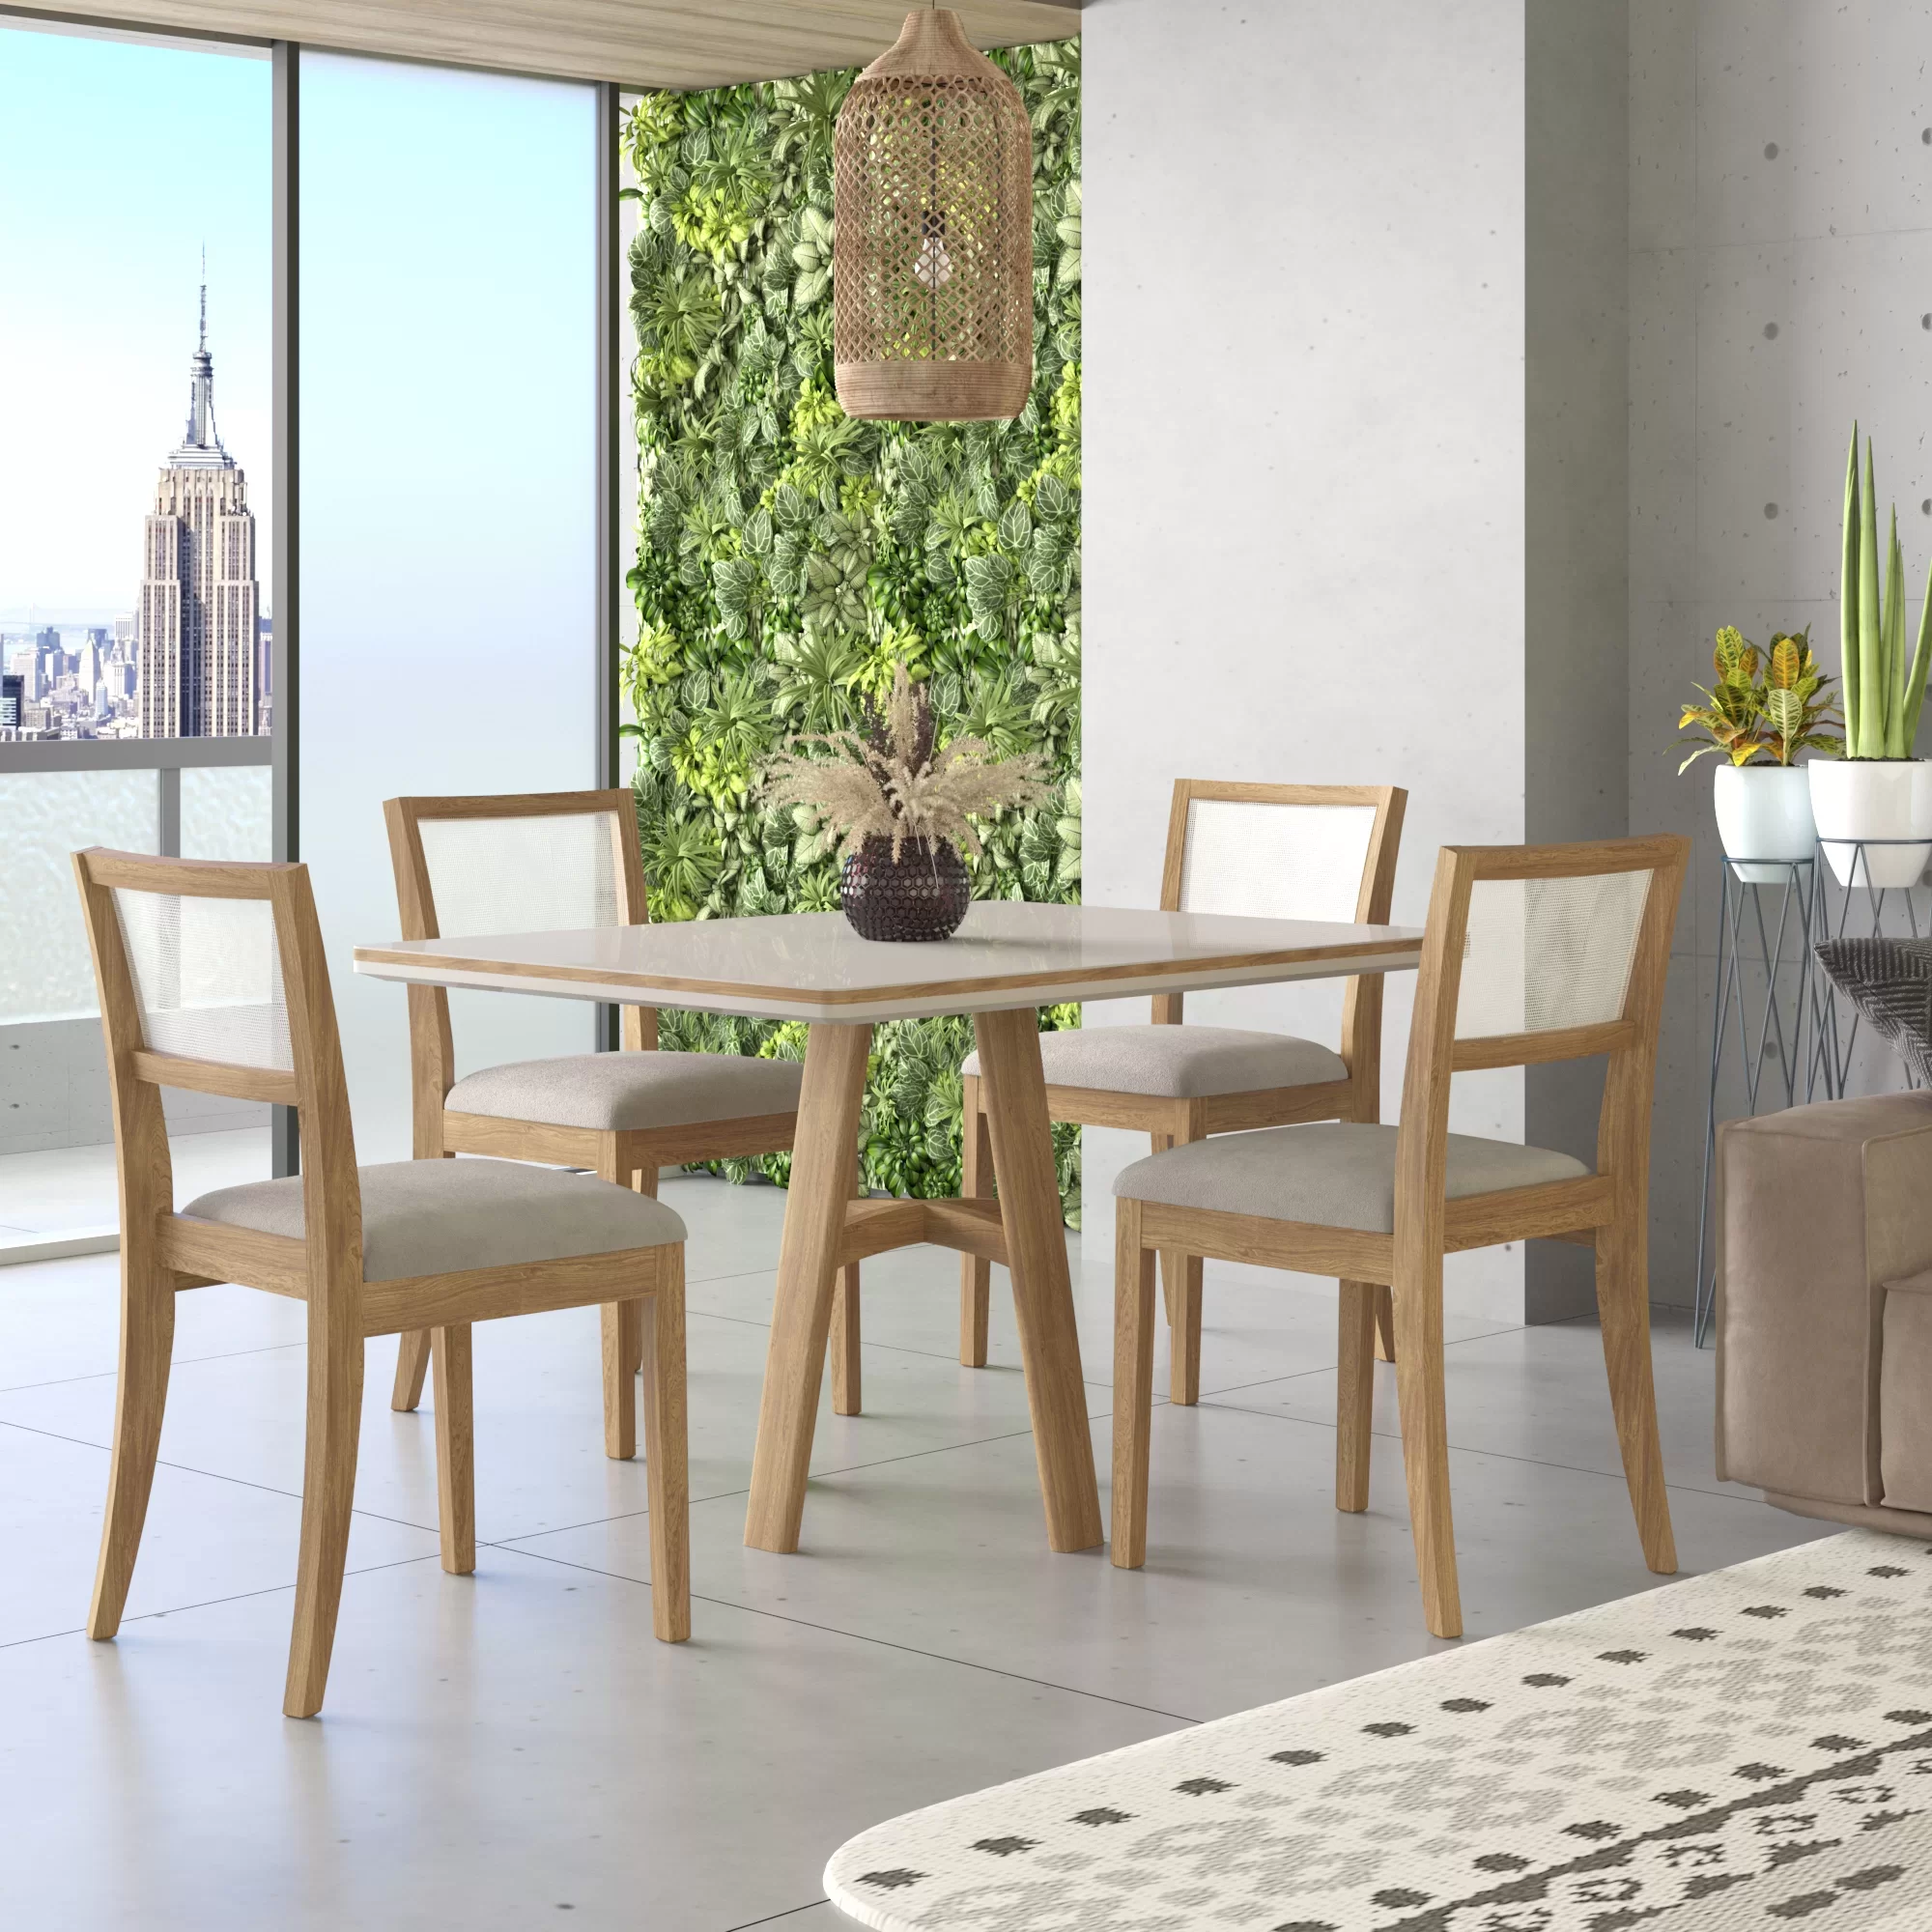 Conjunto Sala de Jantar Mesa com Vidro e 4 Cadeiras Madeira Maciça Tauari Ônix Tradição Móveis